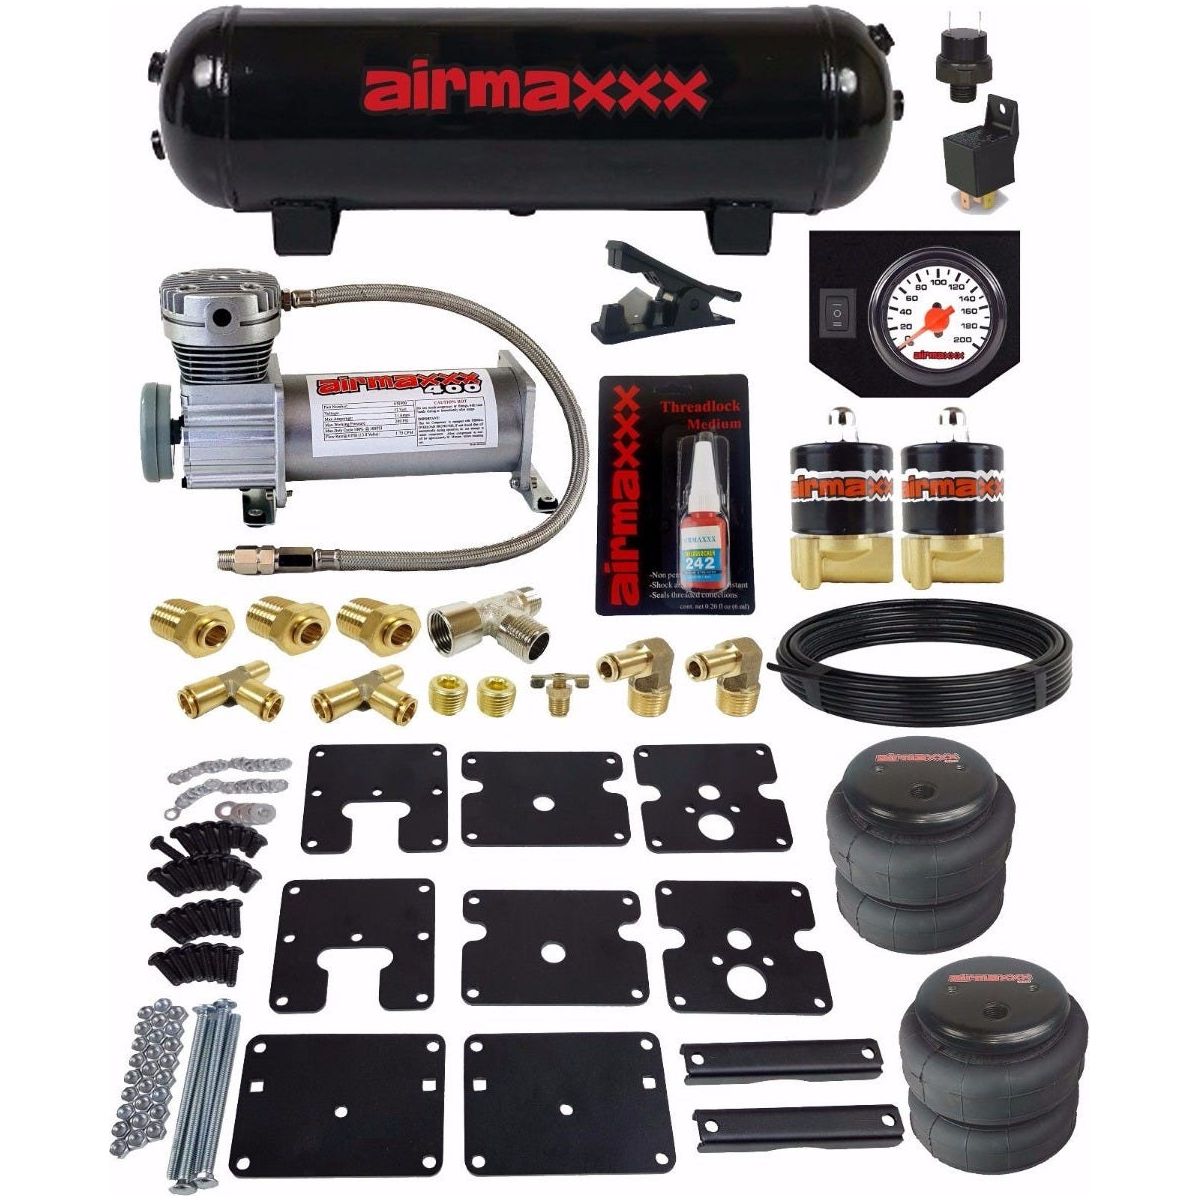 airmaxxx Air OverLoad Tow Kit No Drill 99-06 Silverado 1500 w/ Compressor, Air Gauge & Tank